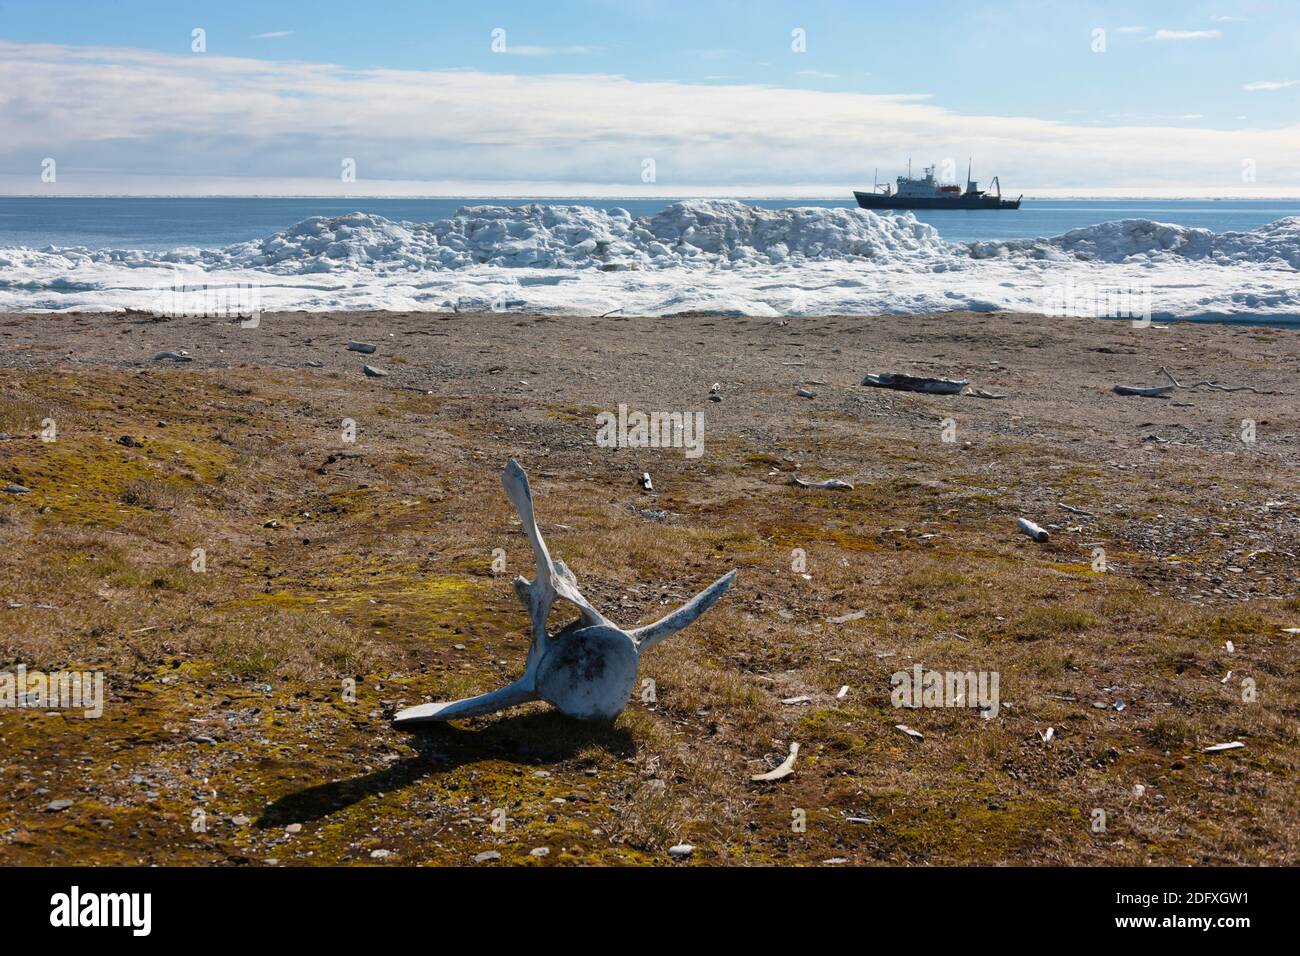 L'os de morse, le Cap Vankarem, l'île Wrangel, mer de Tchoukotka, en Russie extrême-orient Banque D'Images